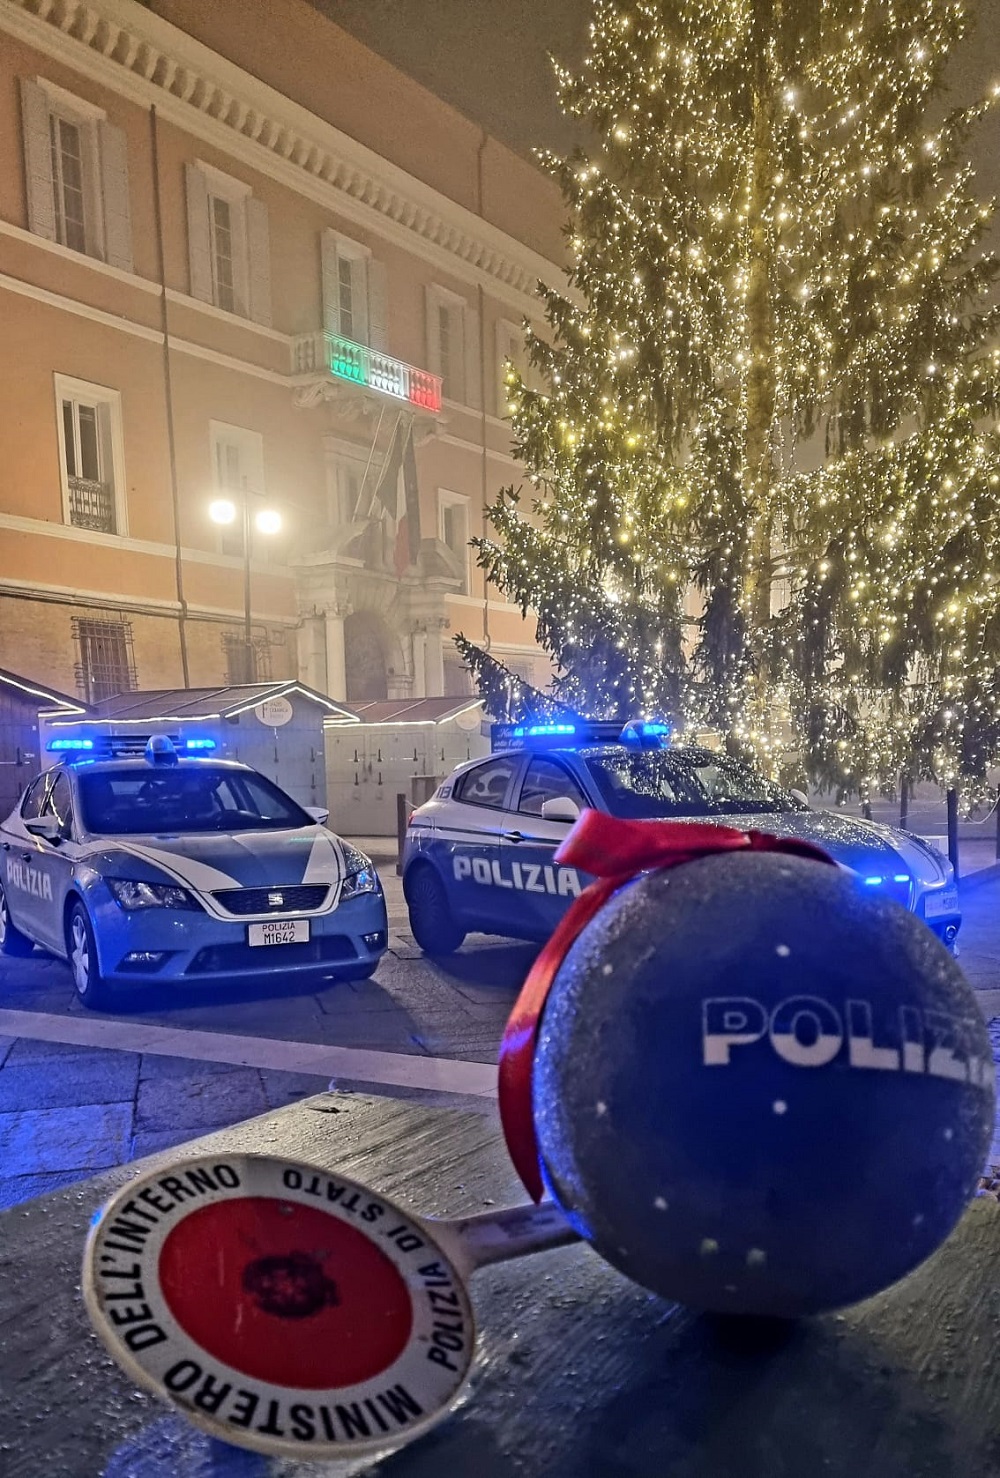 Gli alberi di Natale nelle città d’Italia con le decorazioni natalizie della Polizia di Stato: Ravenna